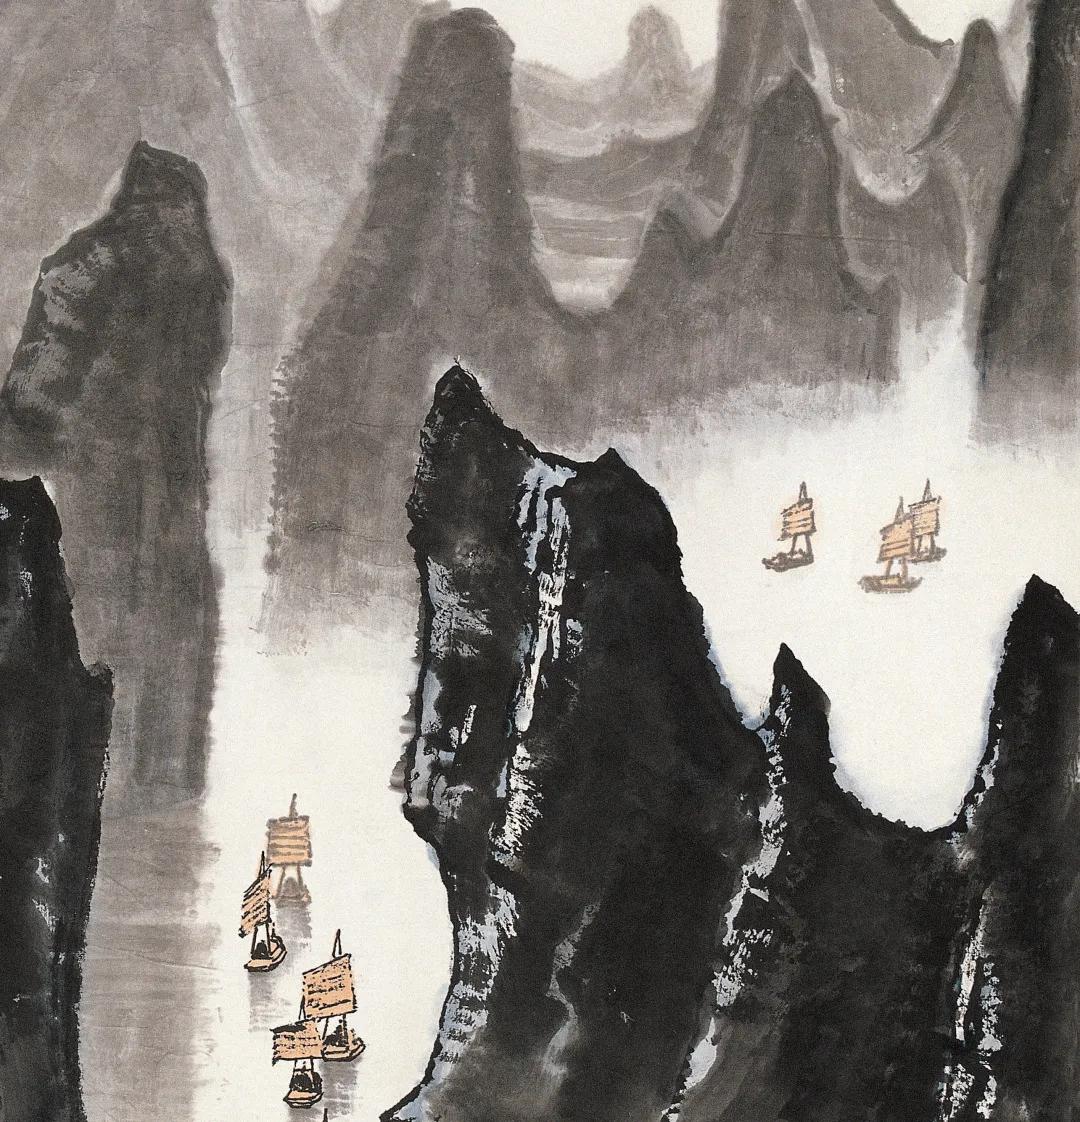 可染笔底烟霞——李可染《漓江胜景图》